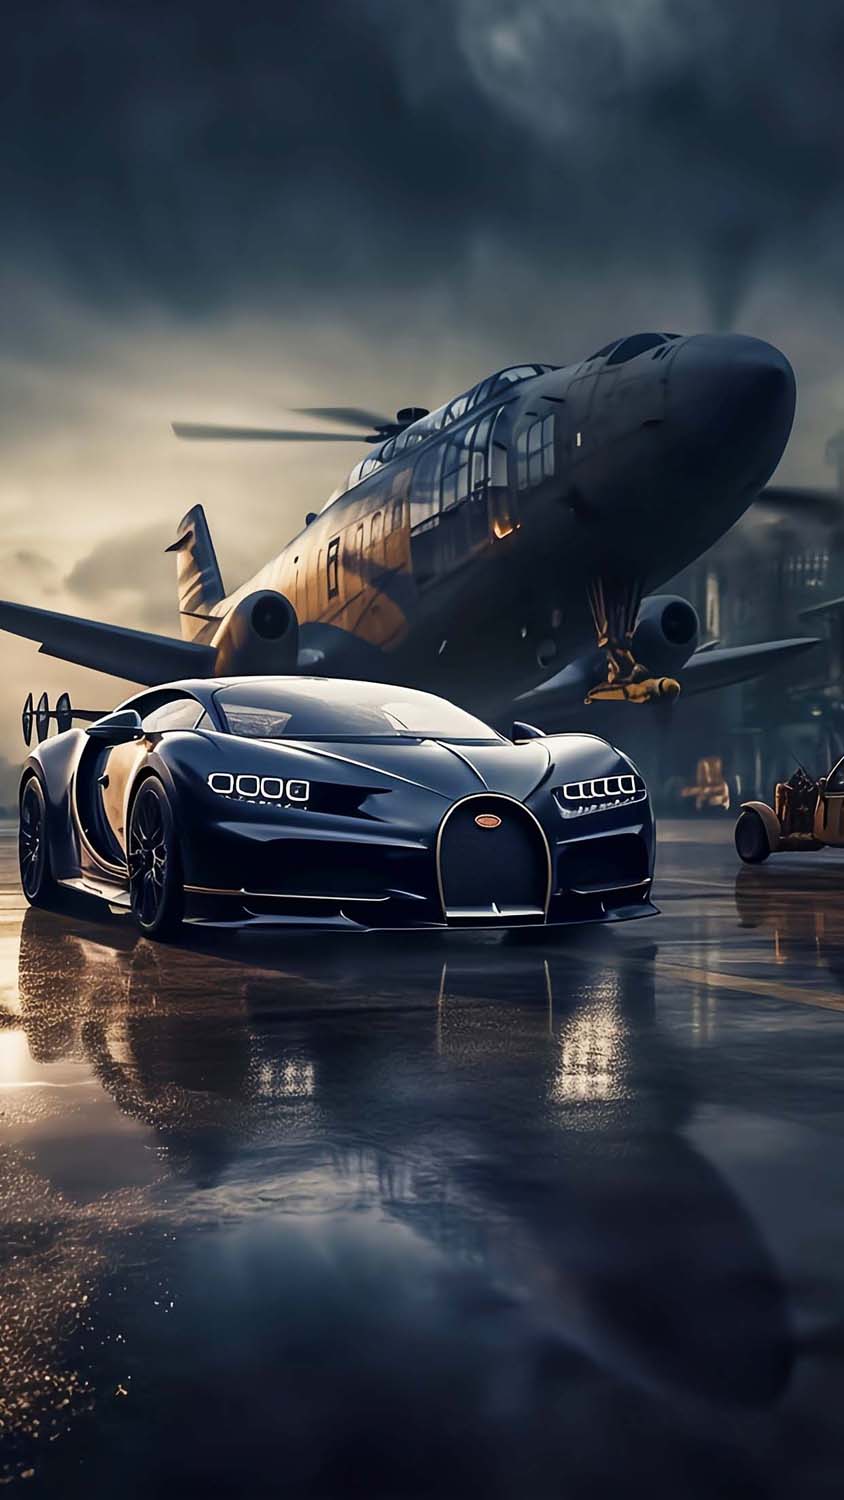 Bugatti vs Plane